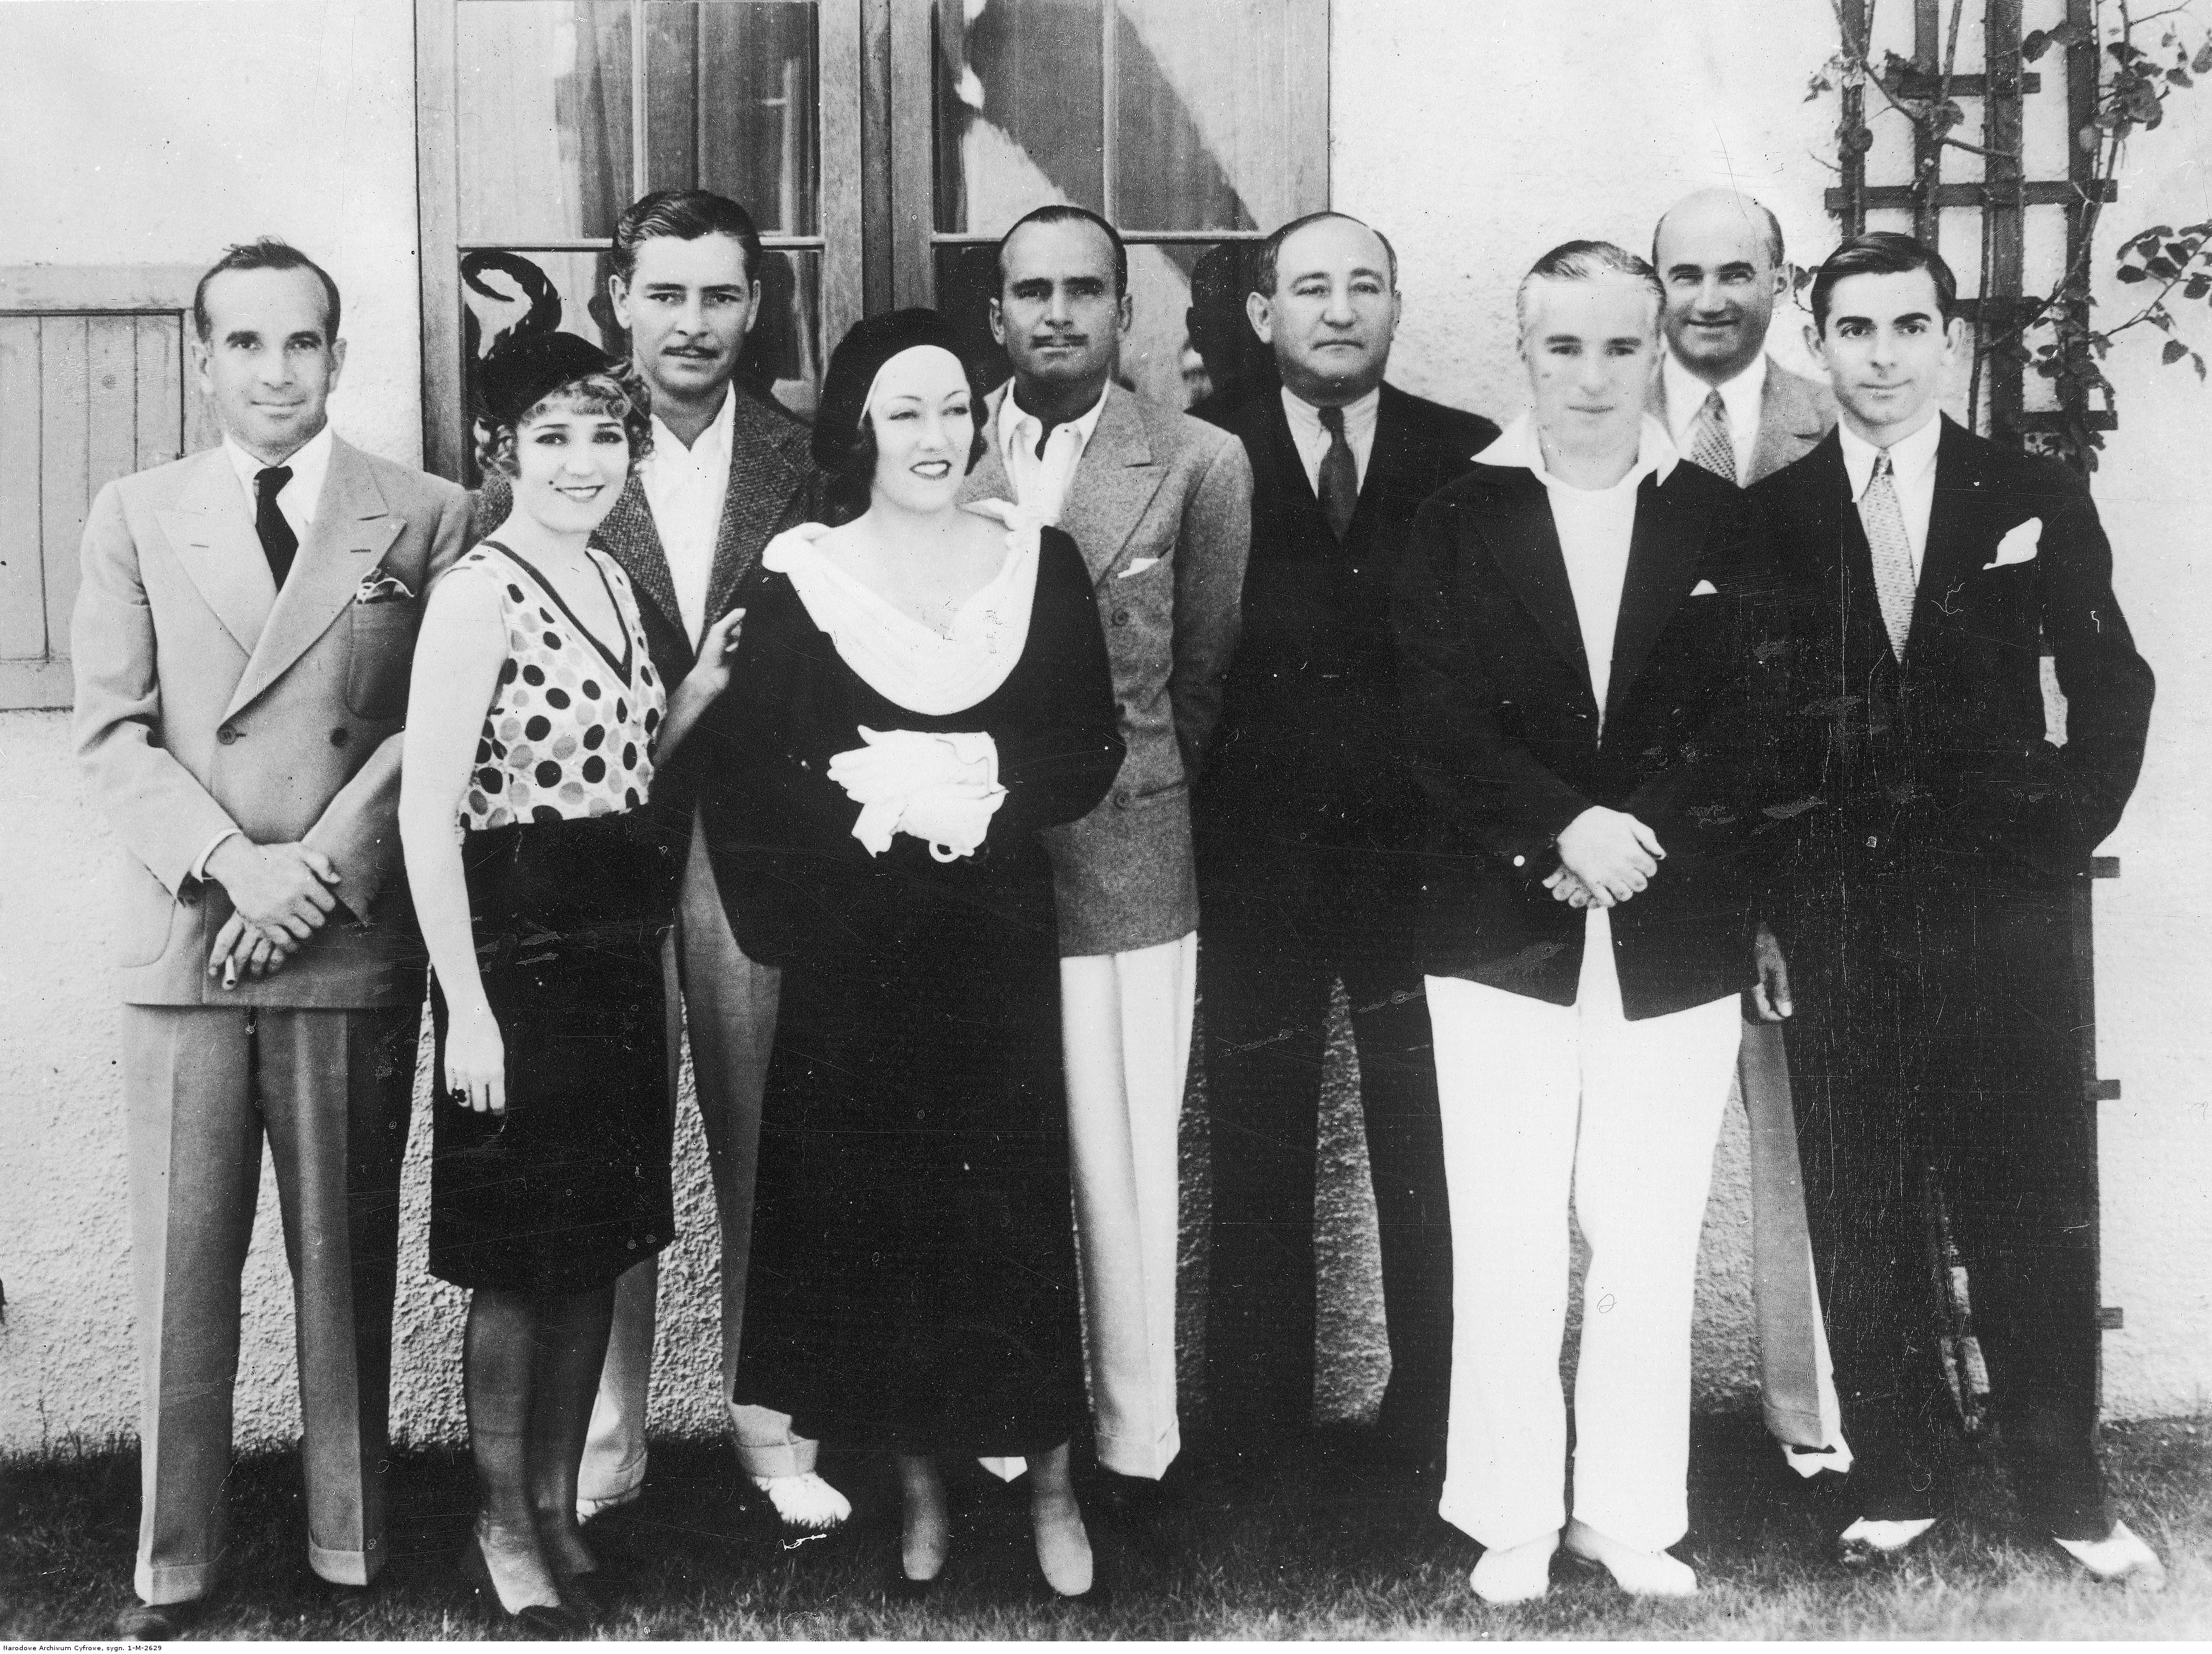 Od lewej: Al Jolson, Mary Pickford, Ronald Colman, Gloria Swanson, Douglas Fairbanks, Joseph Schenck, Charlie Chaplin, Samuel Goldwyn, (czyli Samuel Gelbfisz) oraz Eddie Cantor (foto: Narodowe Archiwum Cyfrowe)